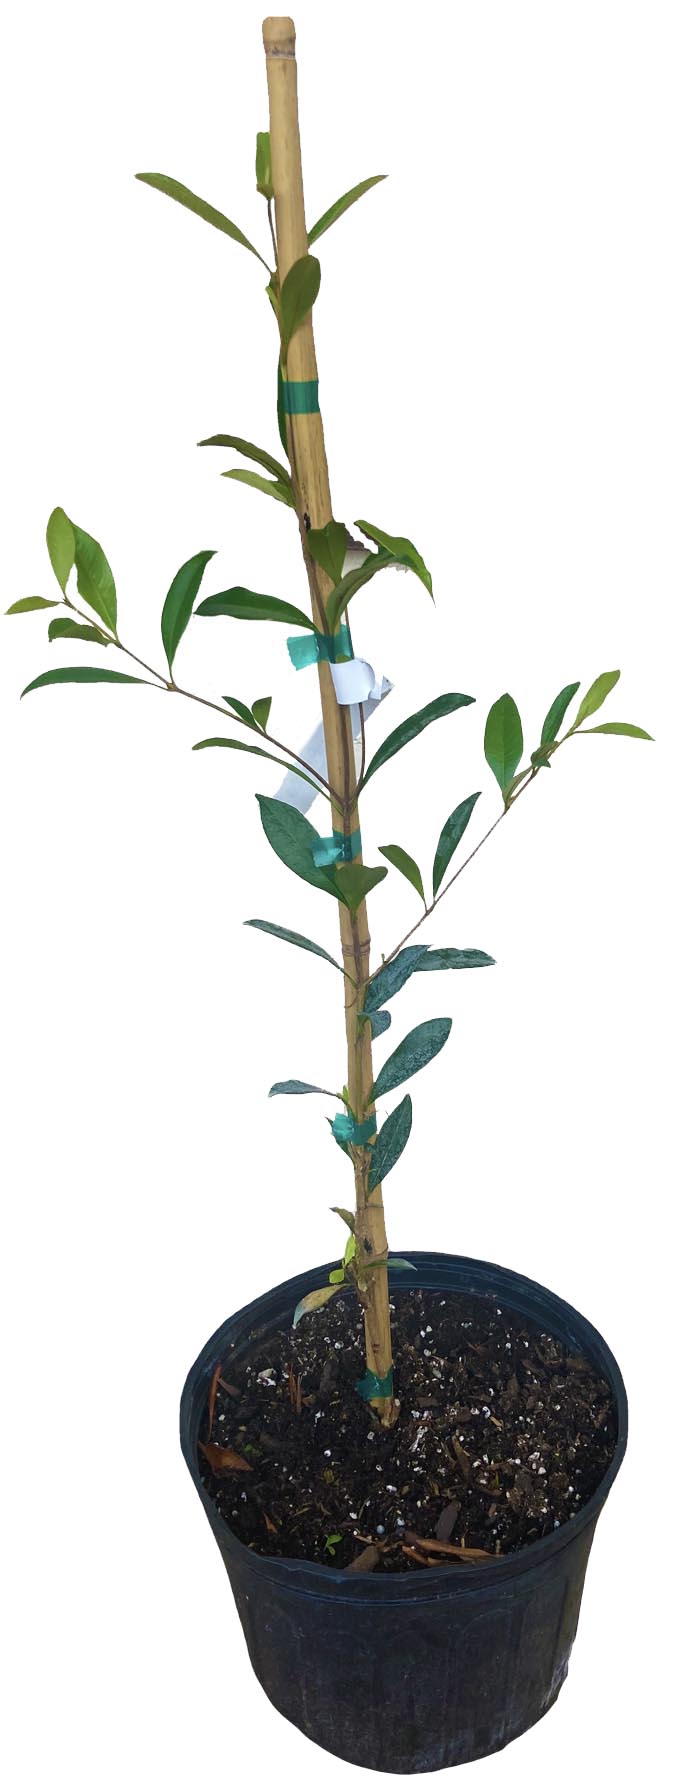 Pitomba [Eugenia luschnathiana] Tree, 2-3 feet tall, from Florida